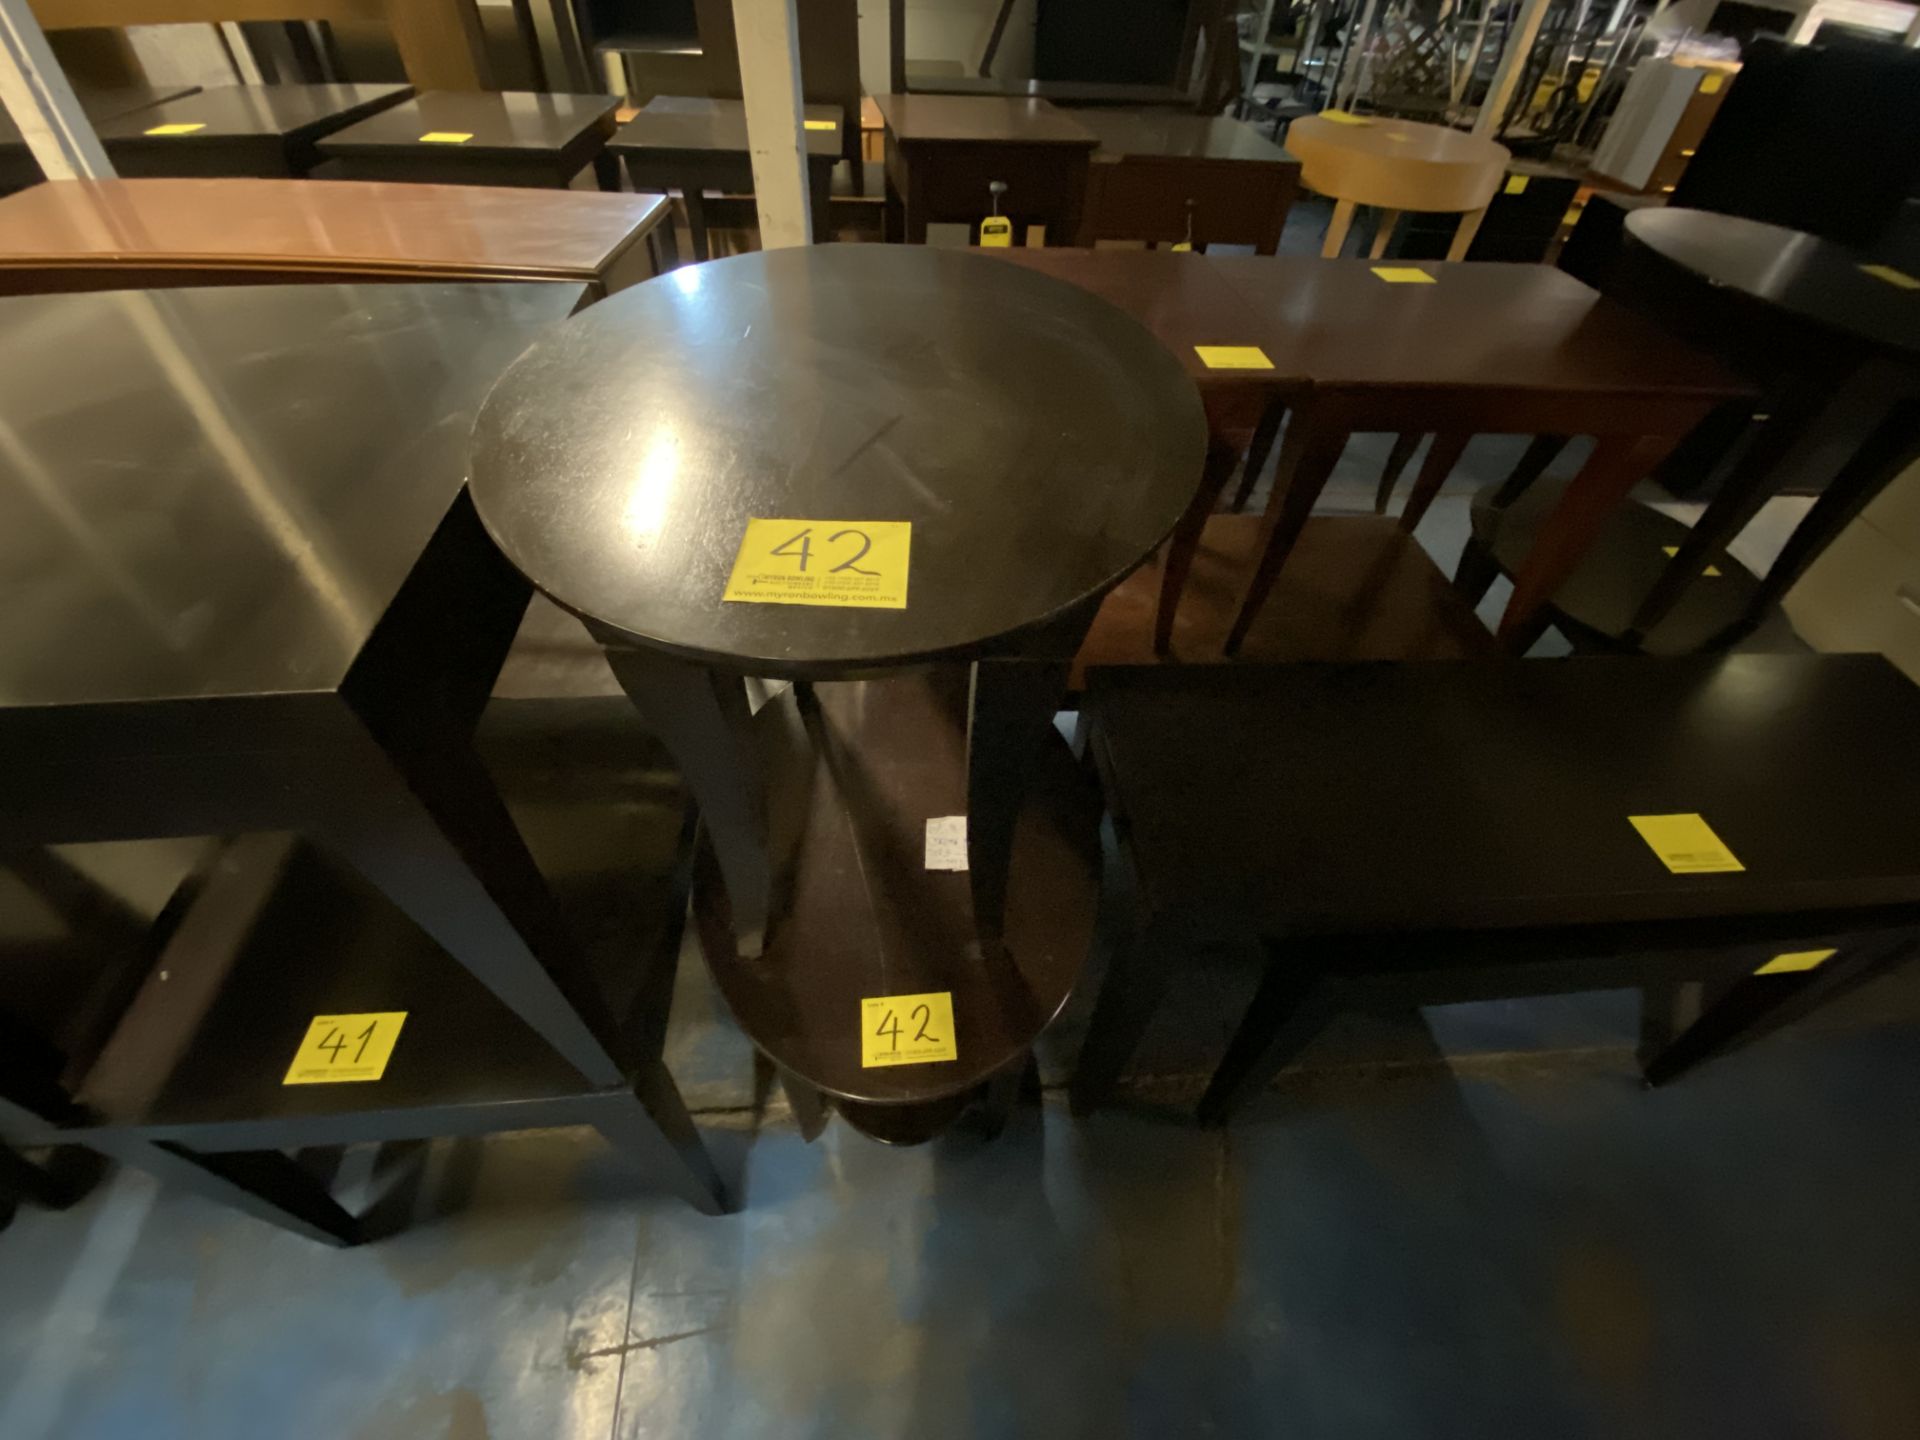 Lote de 2 mesas contiene: 1 Mesa Tipo Esquinero Ovalada de Madera Color Café 70x55x58 cm y 1 Mesa T